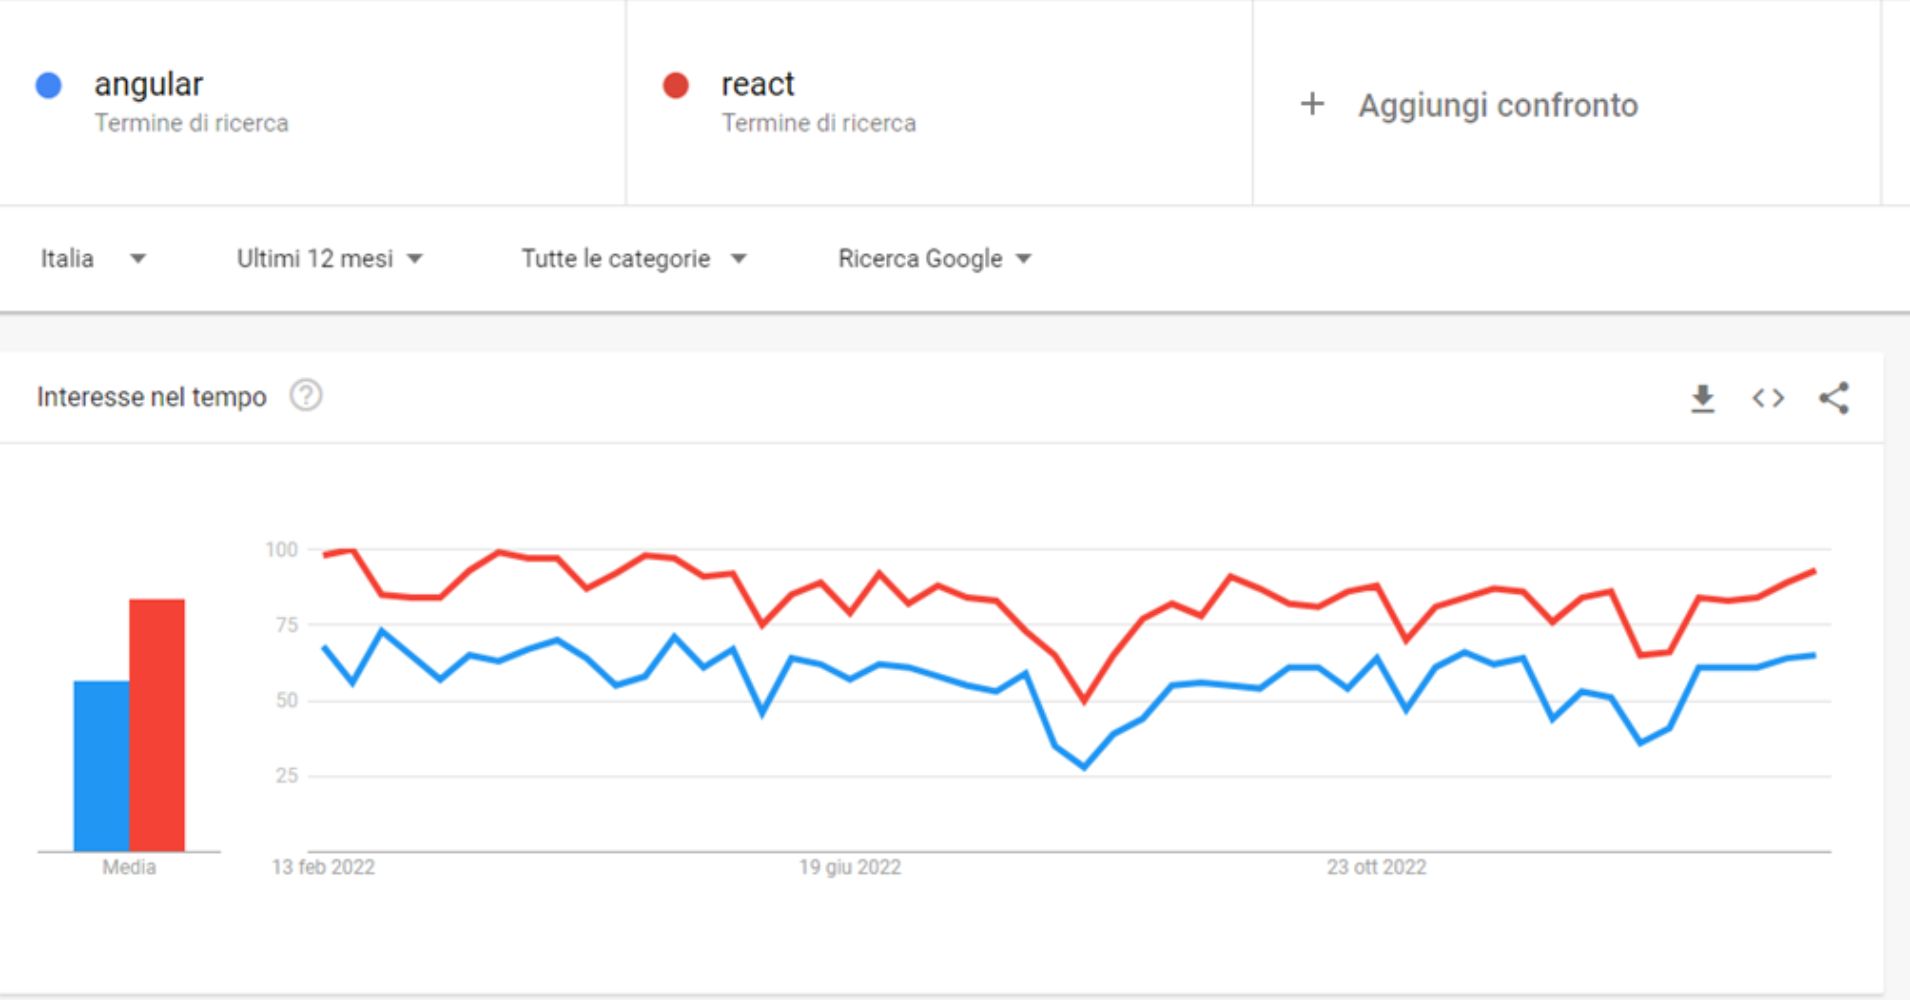 Confronto Google Trend tra REGULAR E REACT